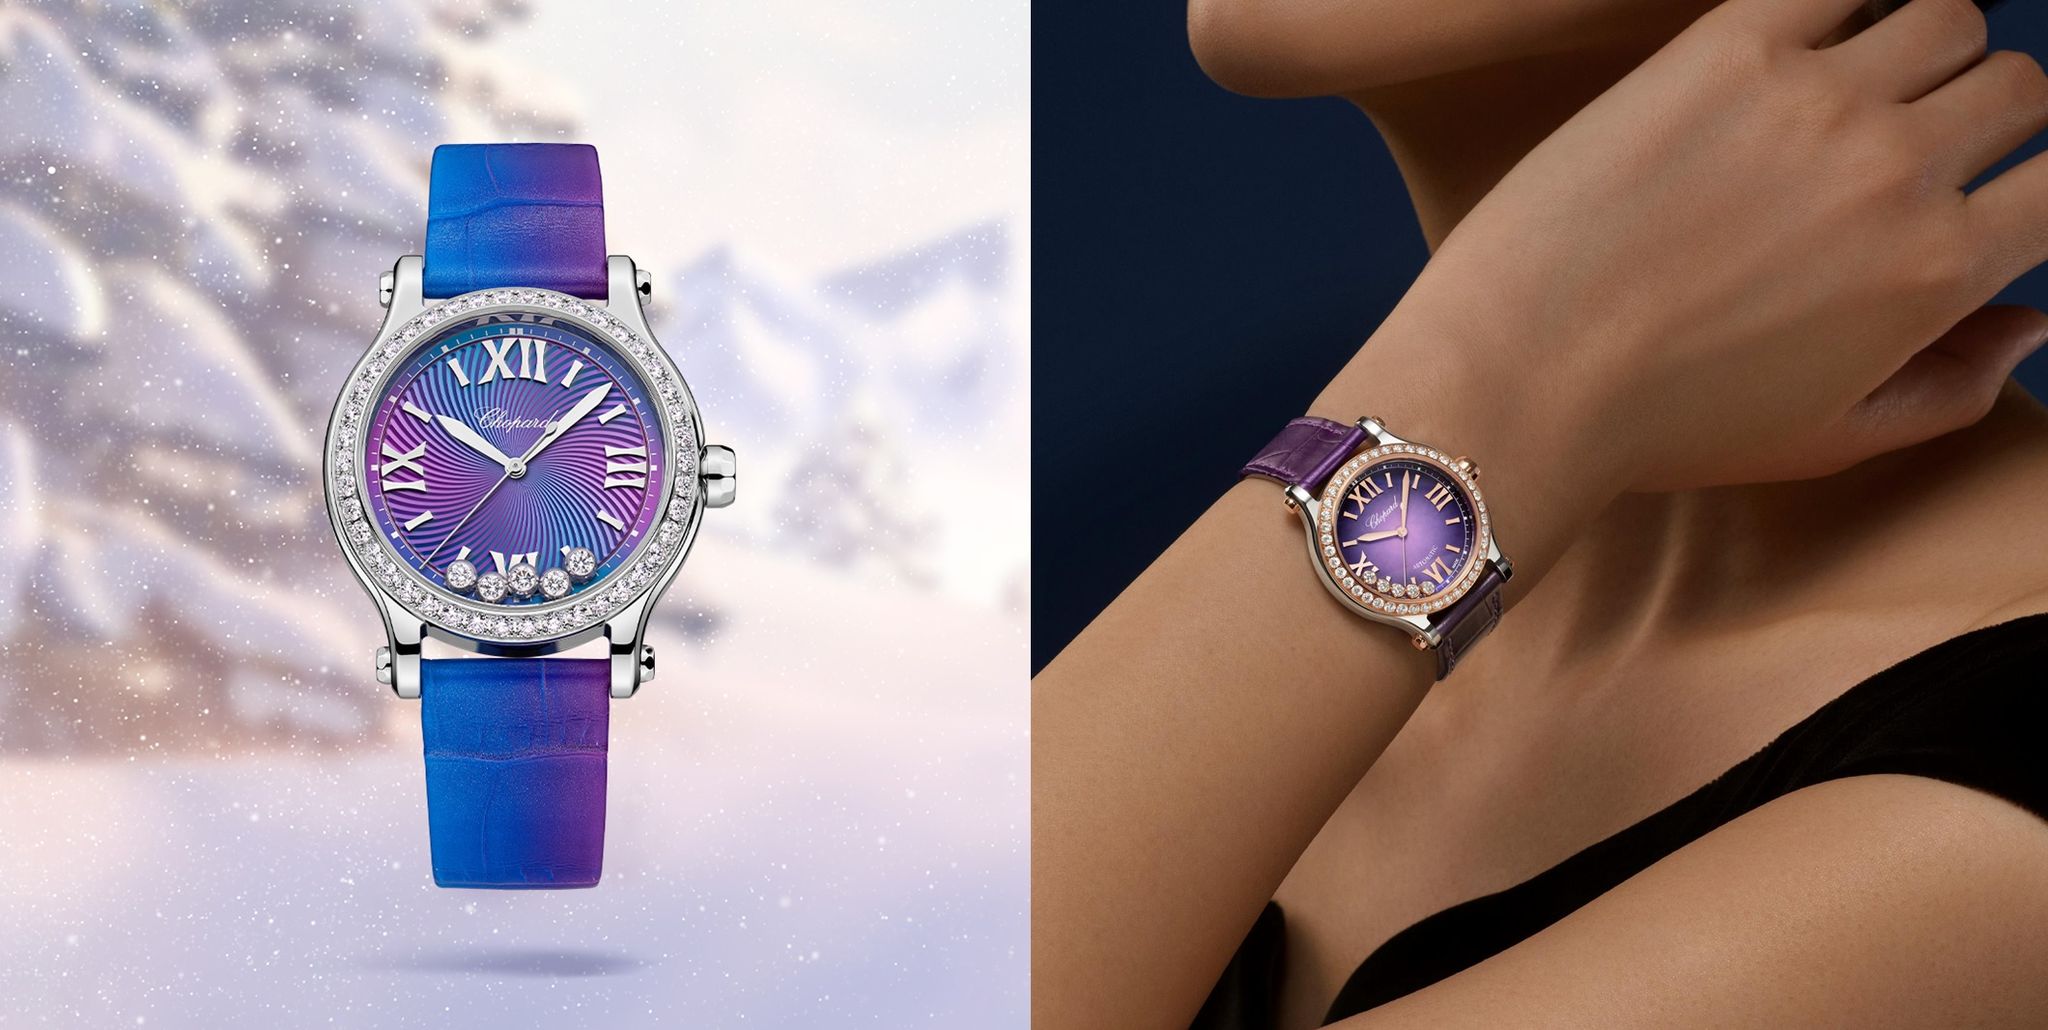 蕭邦 happy sport 腕錶以經典的33錶徑尺寸搭配浪漫紫調，續寫chopard追求「生活喜悅」（joie de vivre）的傳奇篇章。